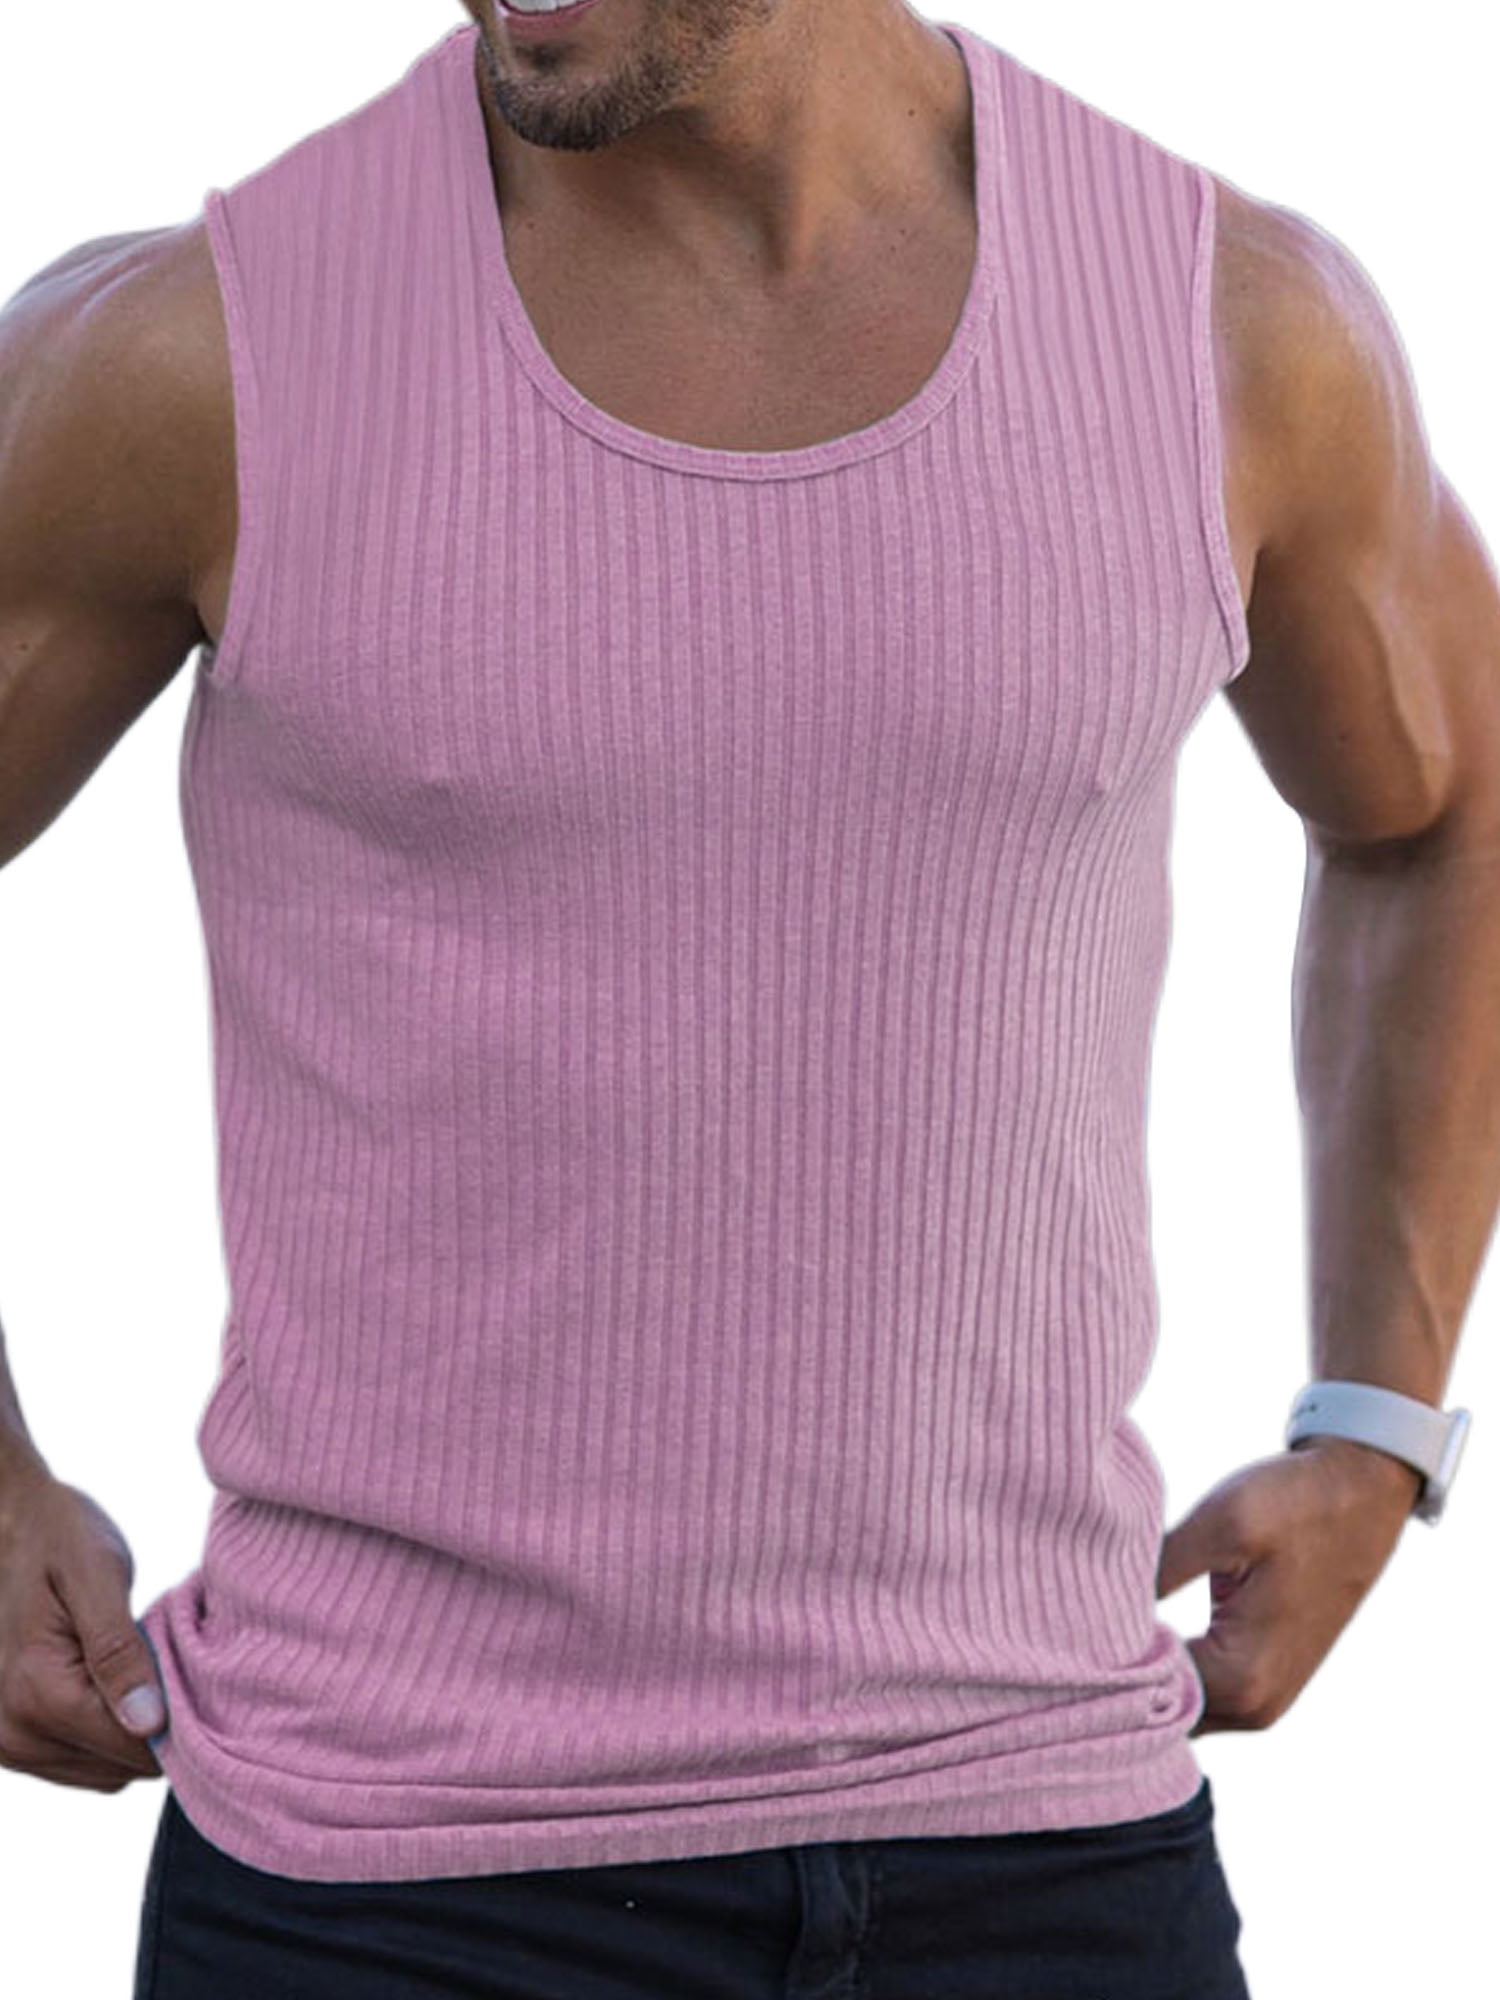 Men's Pink Tank Tops